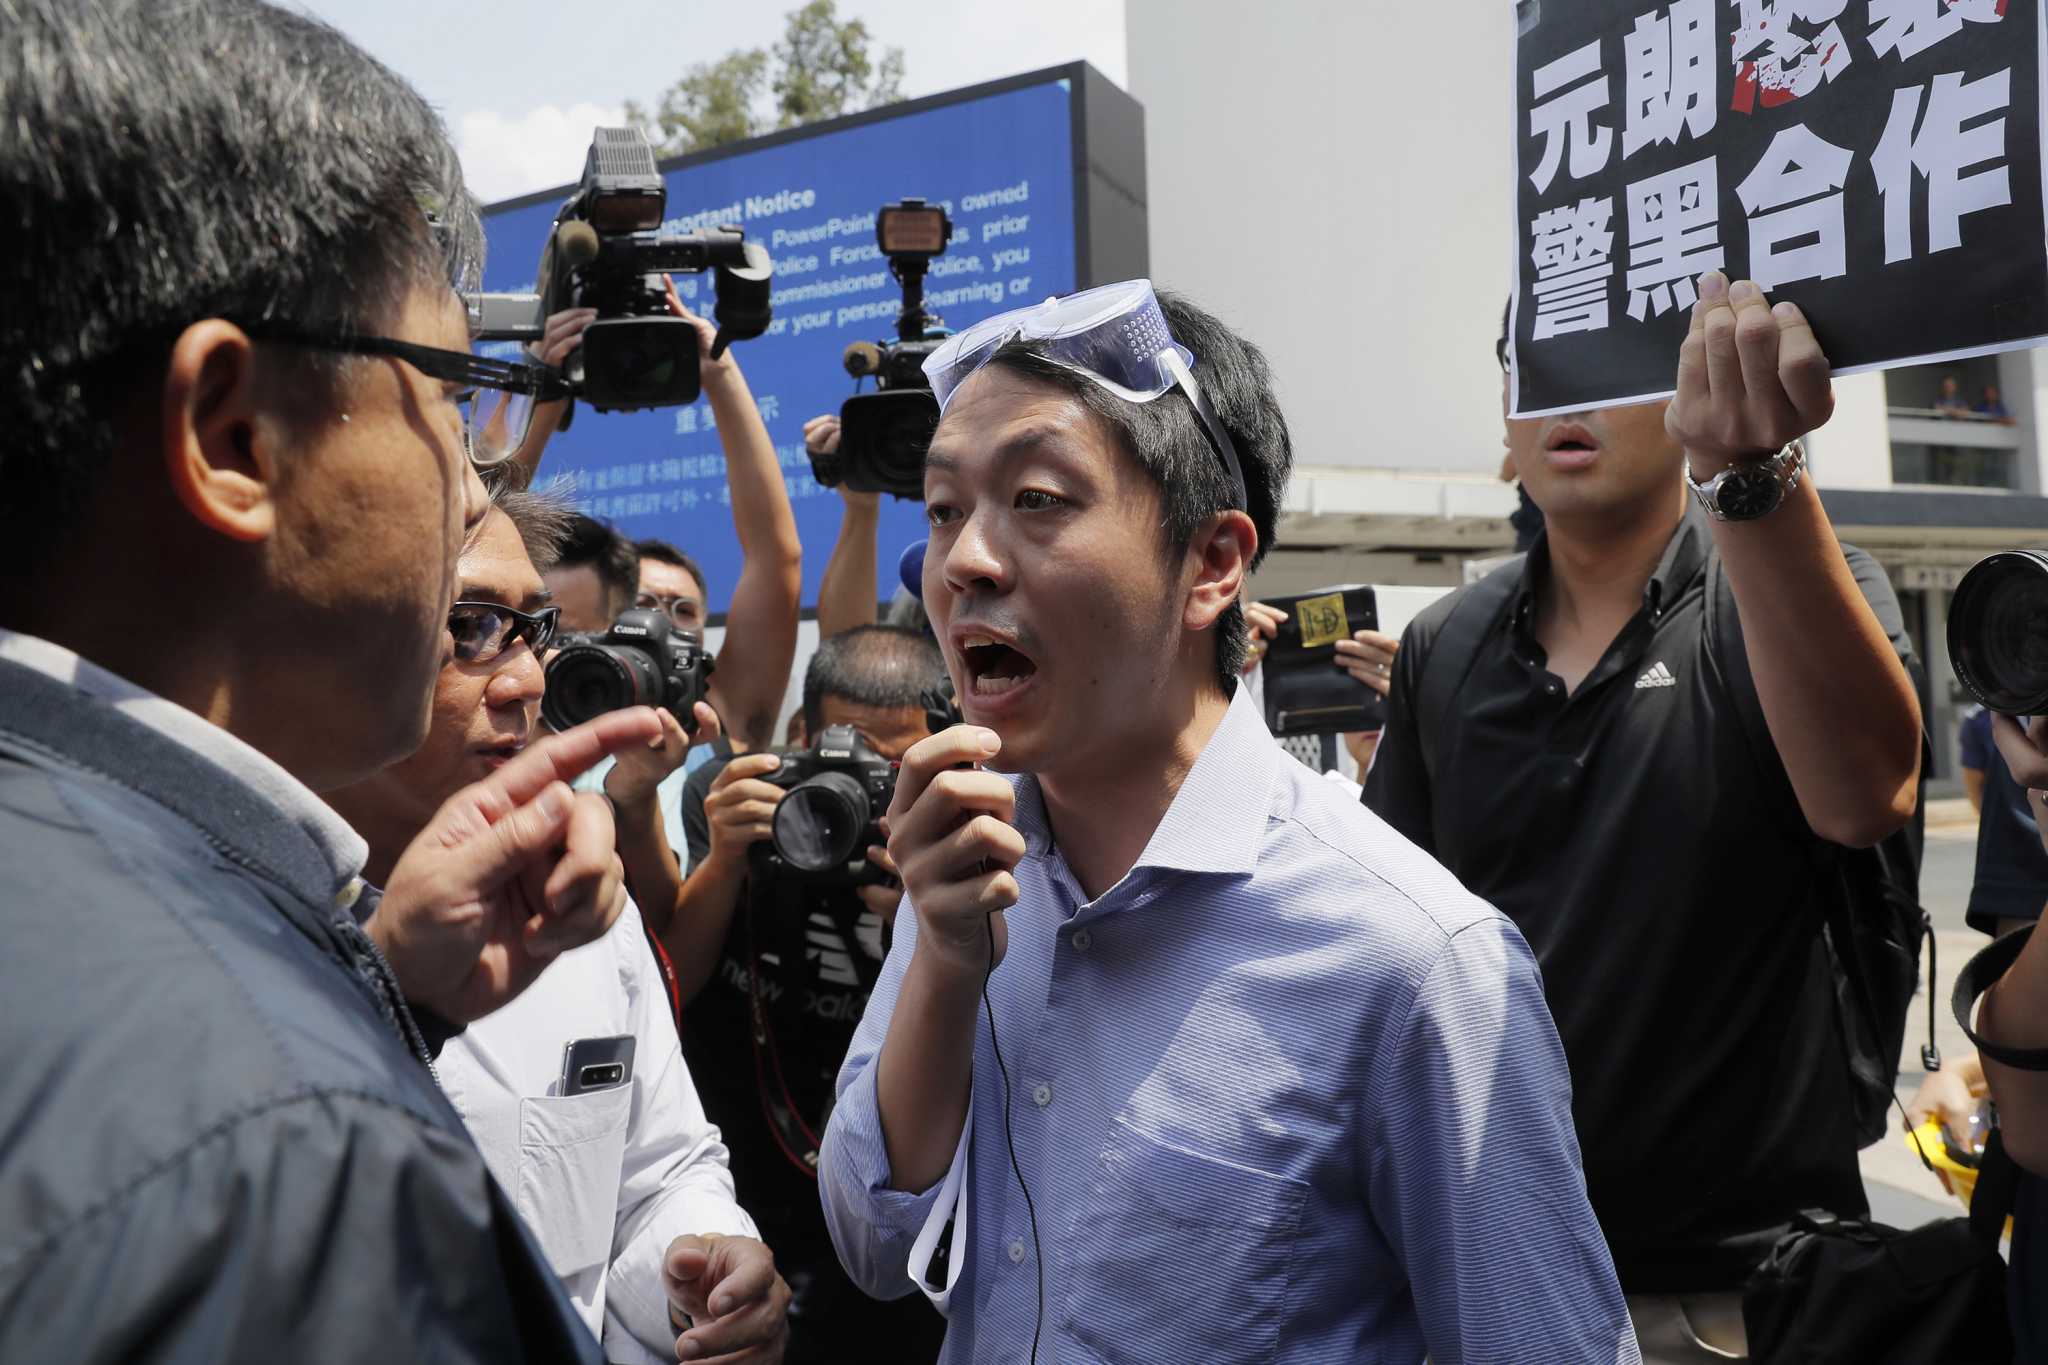 Ex-Hong Kong lawmaker asks Europe to provide 'safe haven'